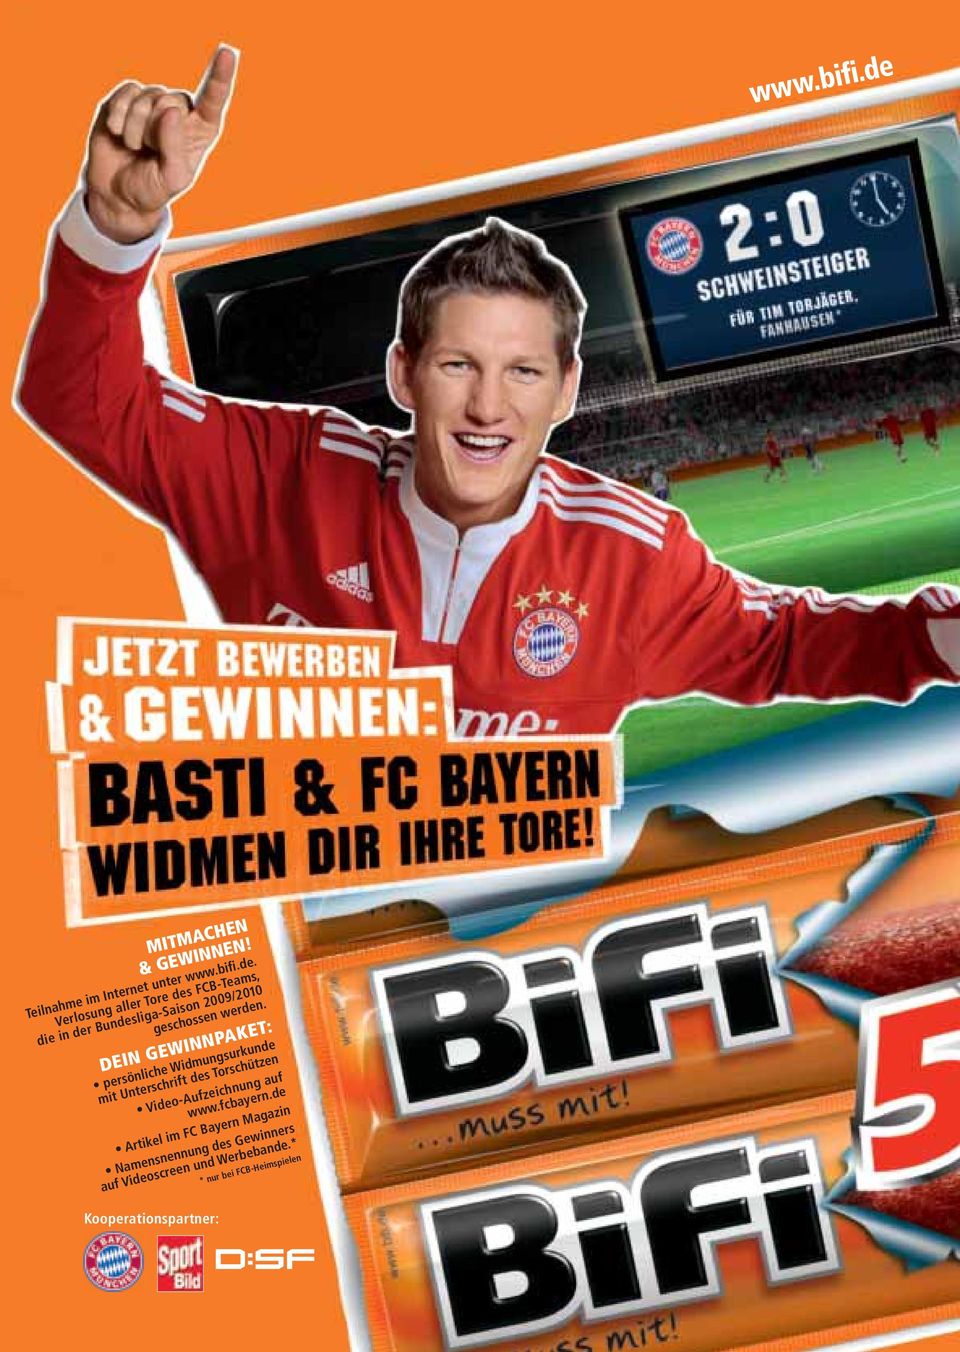 fcbayern.de Artikel im FC Bayern Magazin Namensnennung des Gewinners auf Videoscreen und Werbebande.